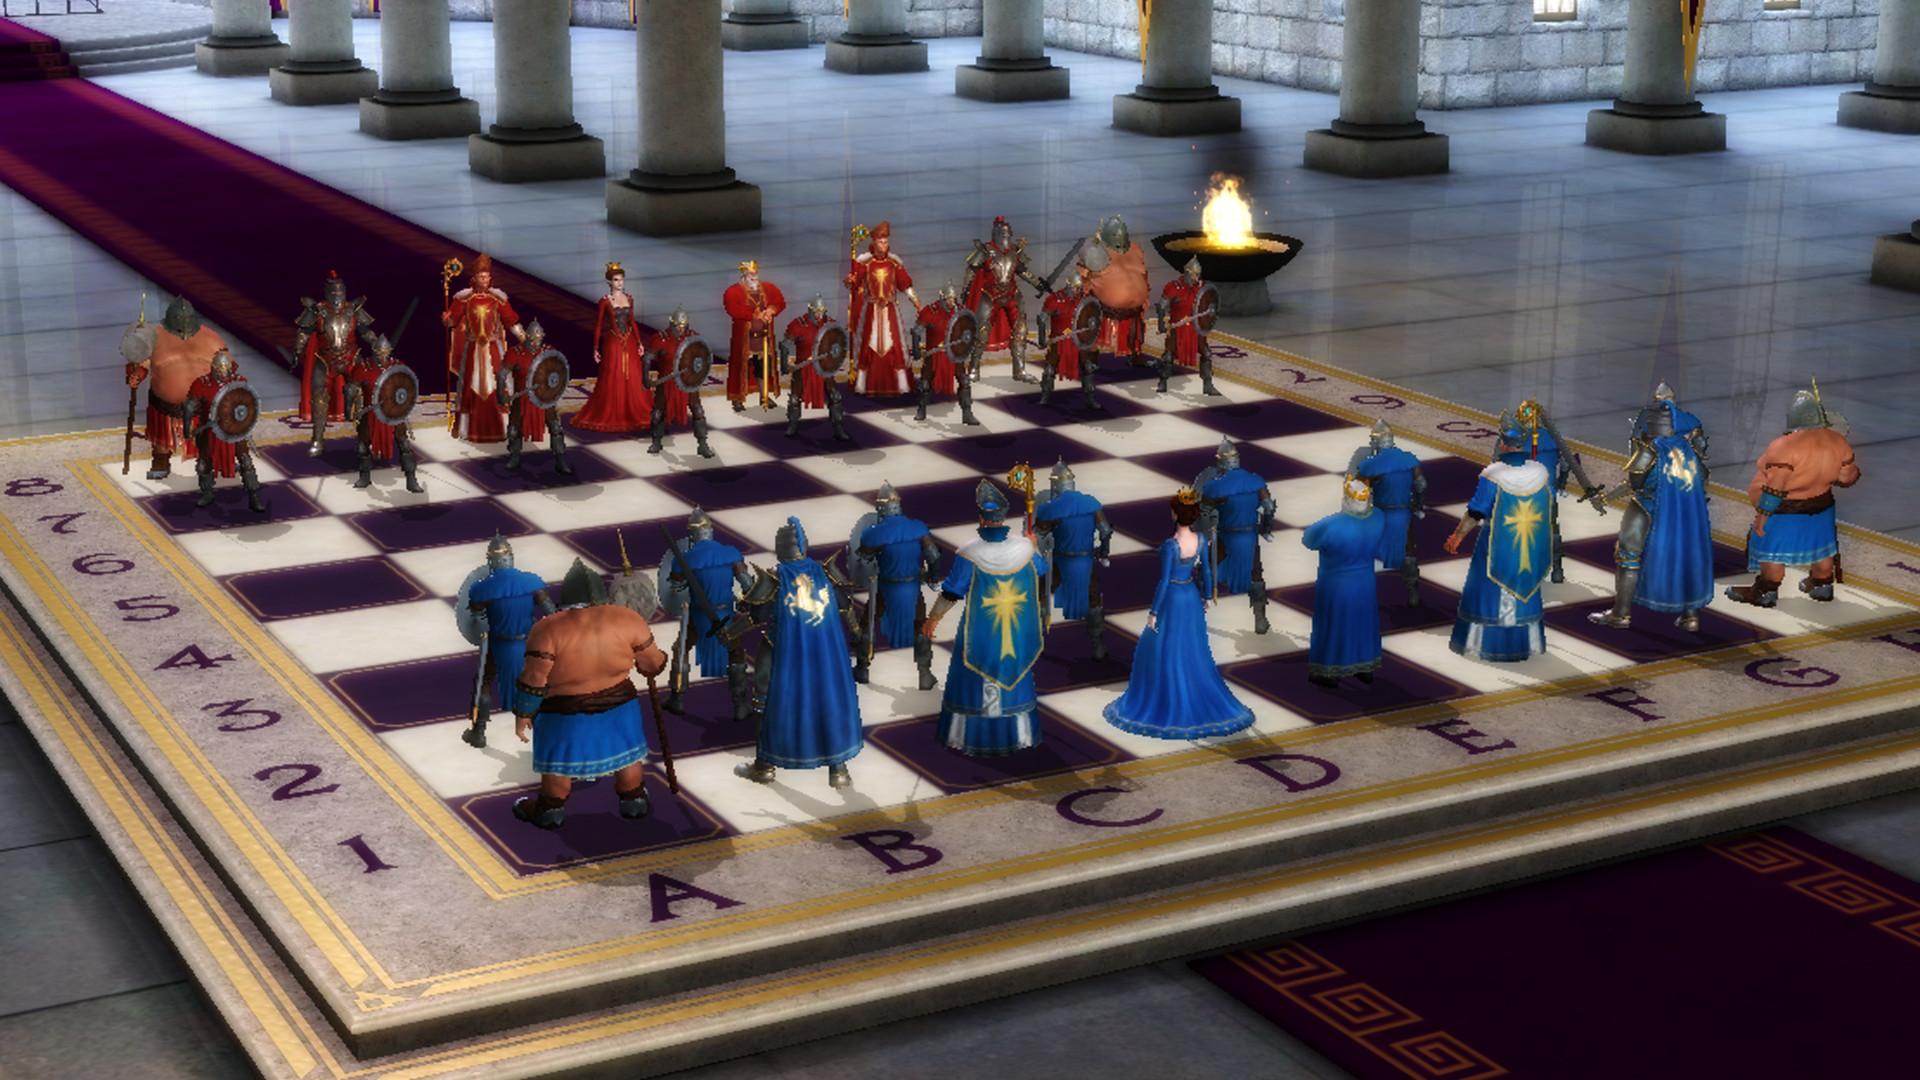 Шахматы с живыми соперниками